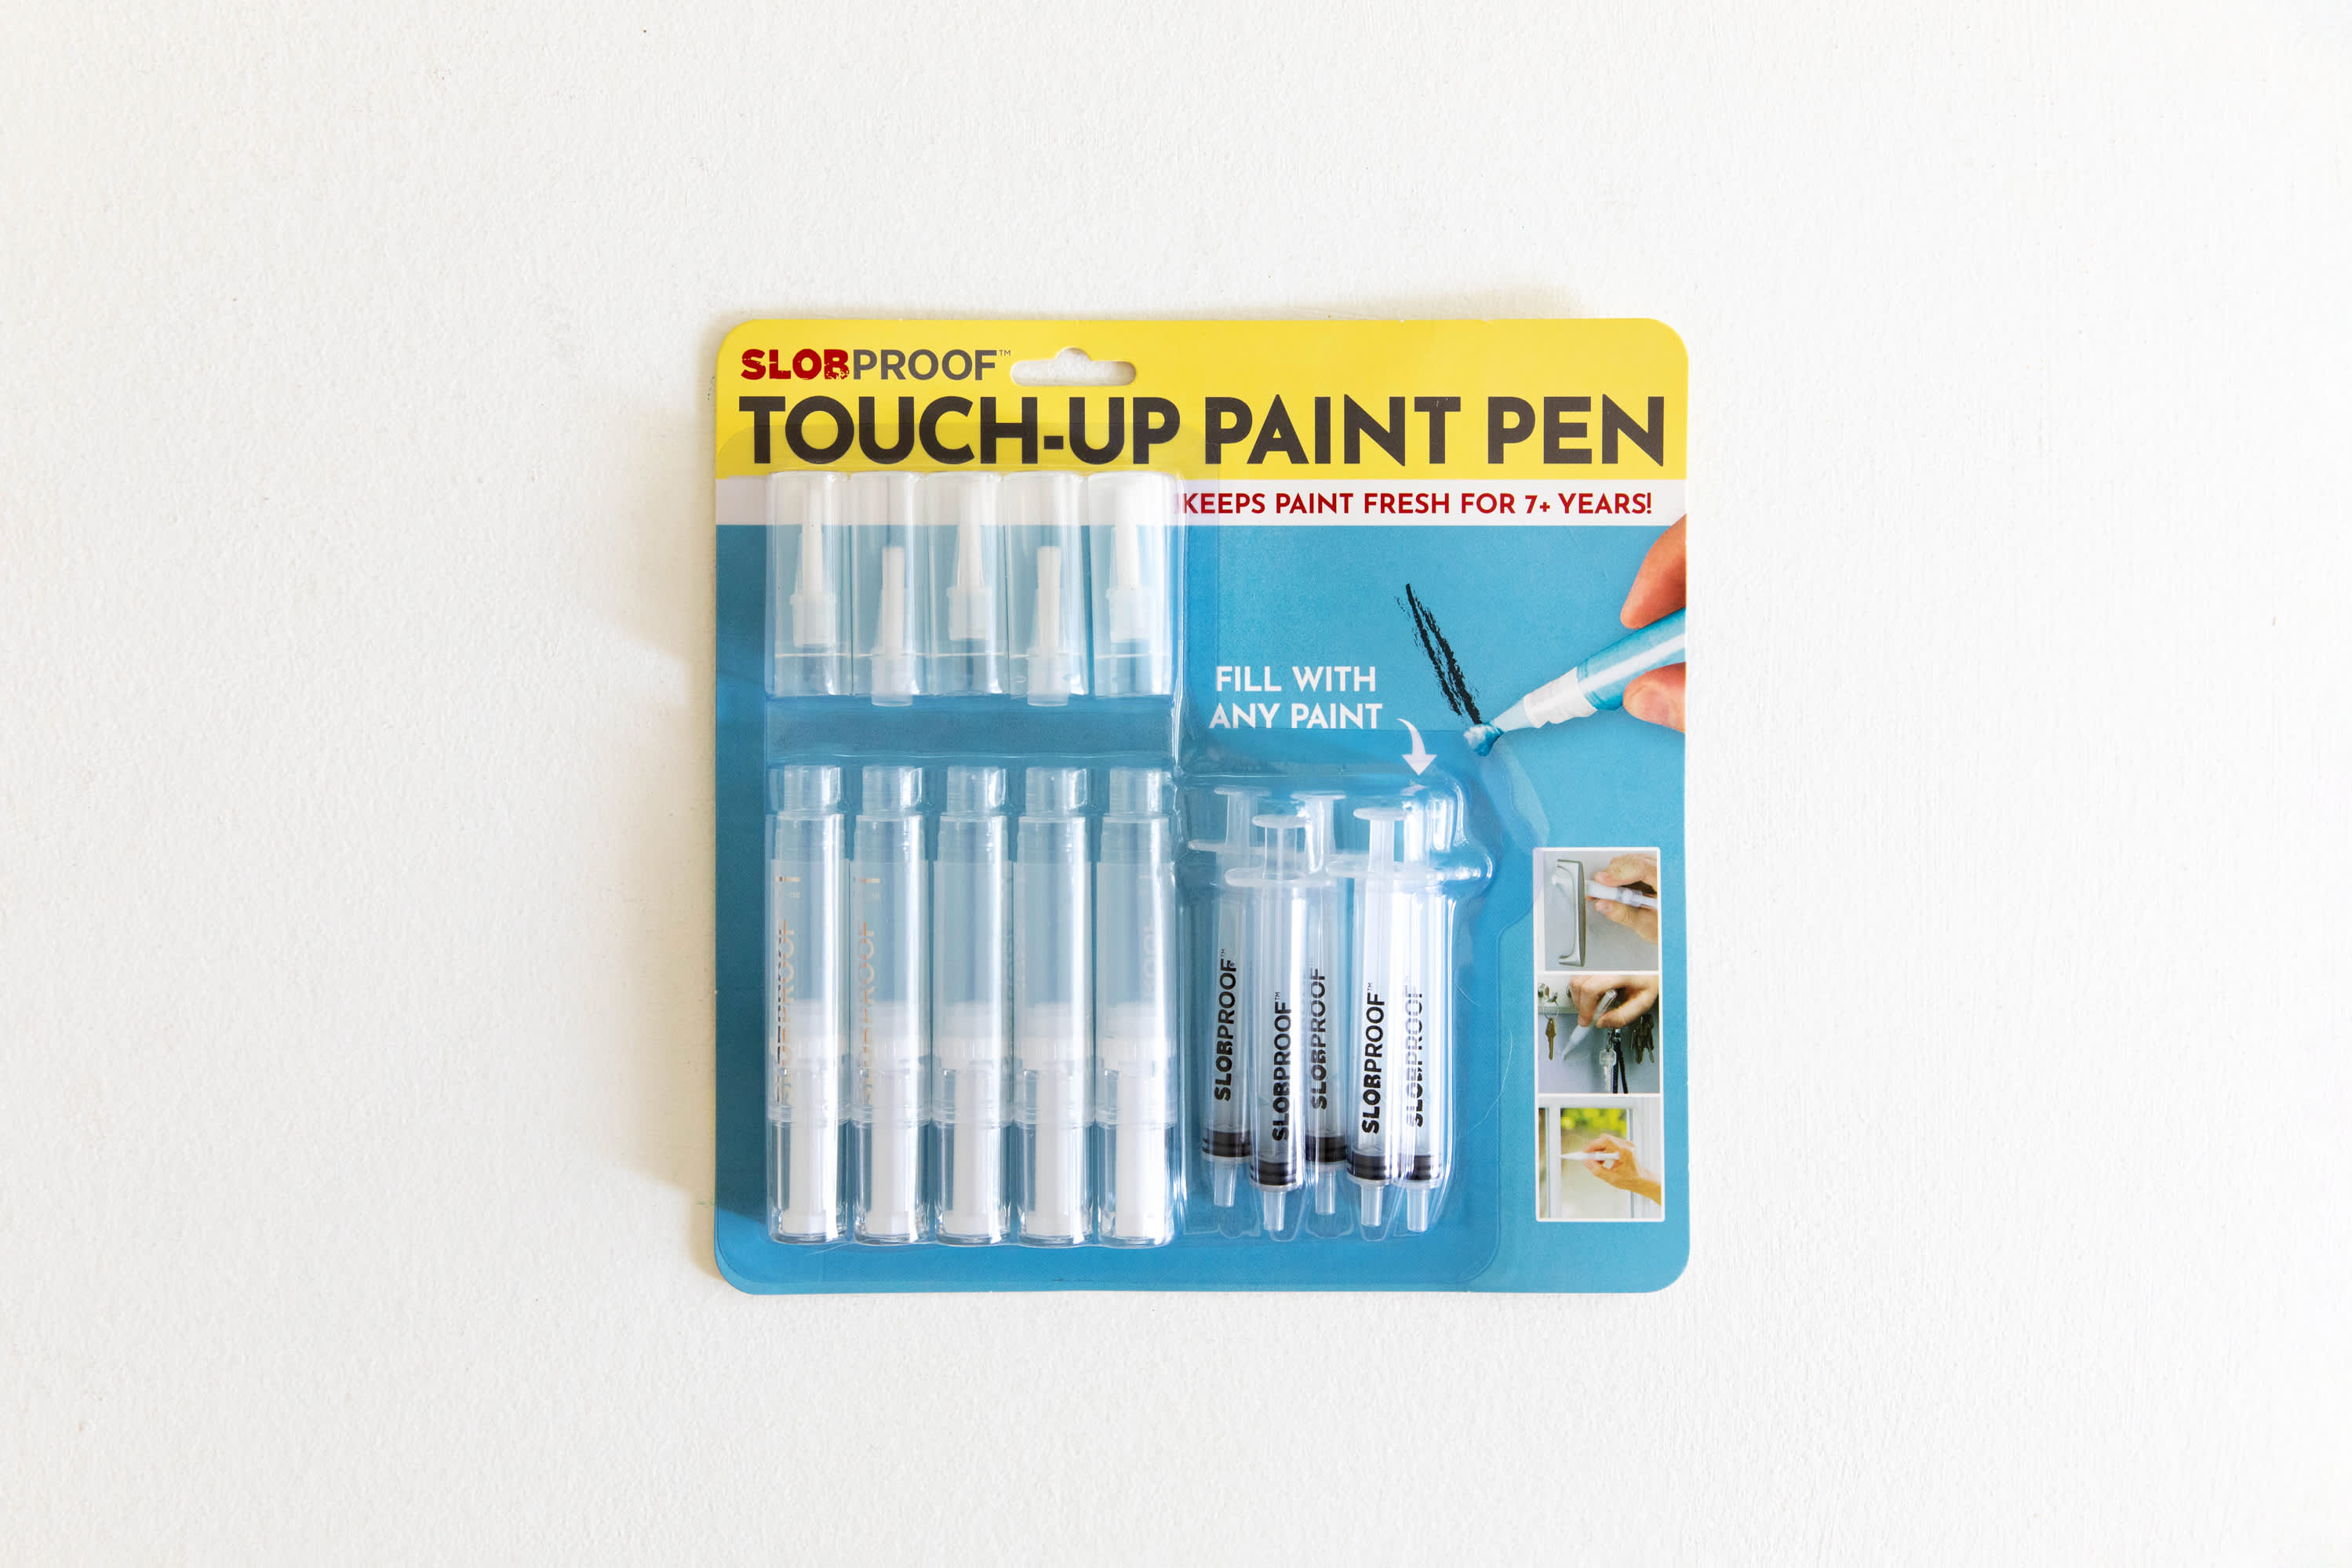 Slobproof Touch-Up Paint Pen